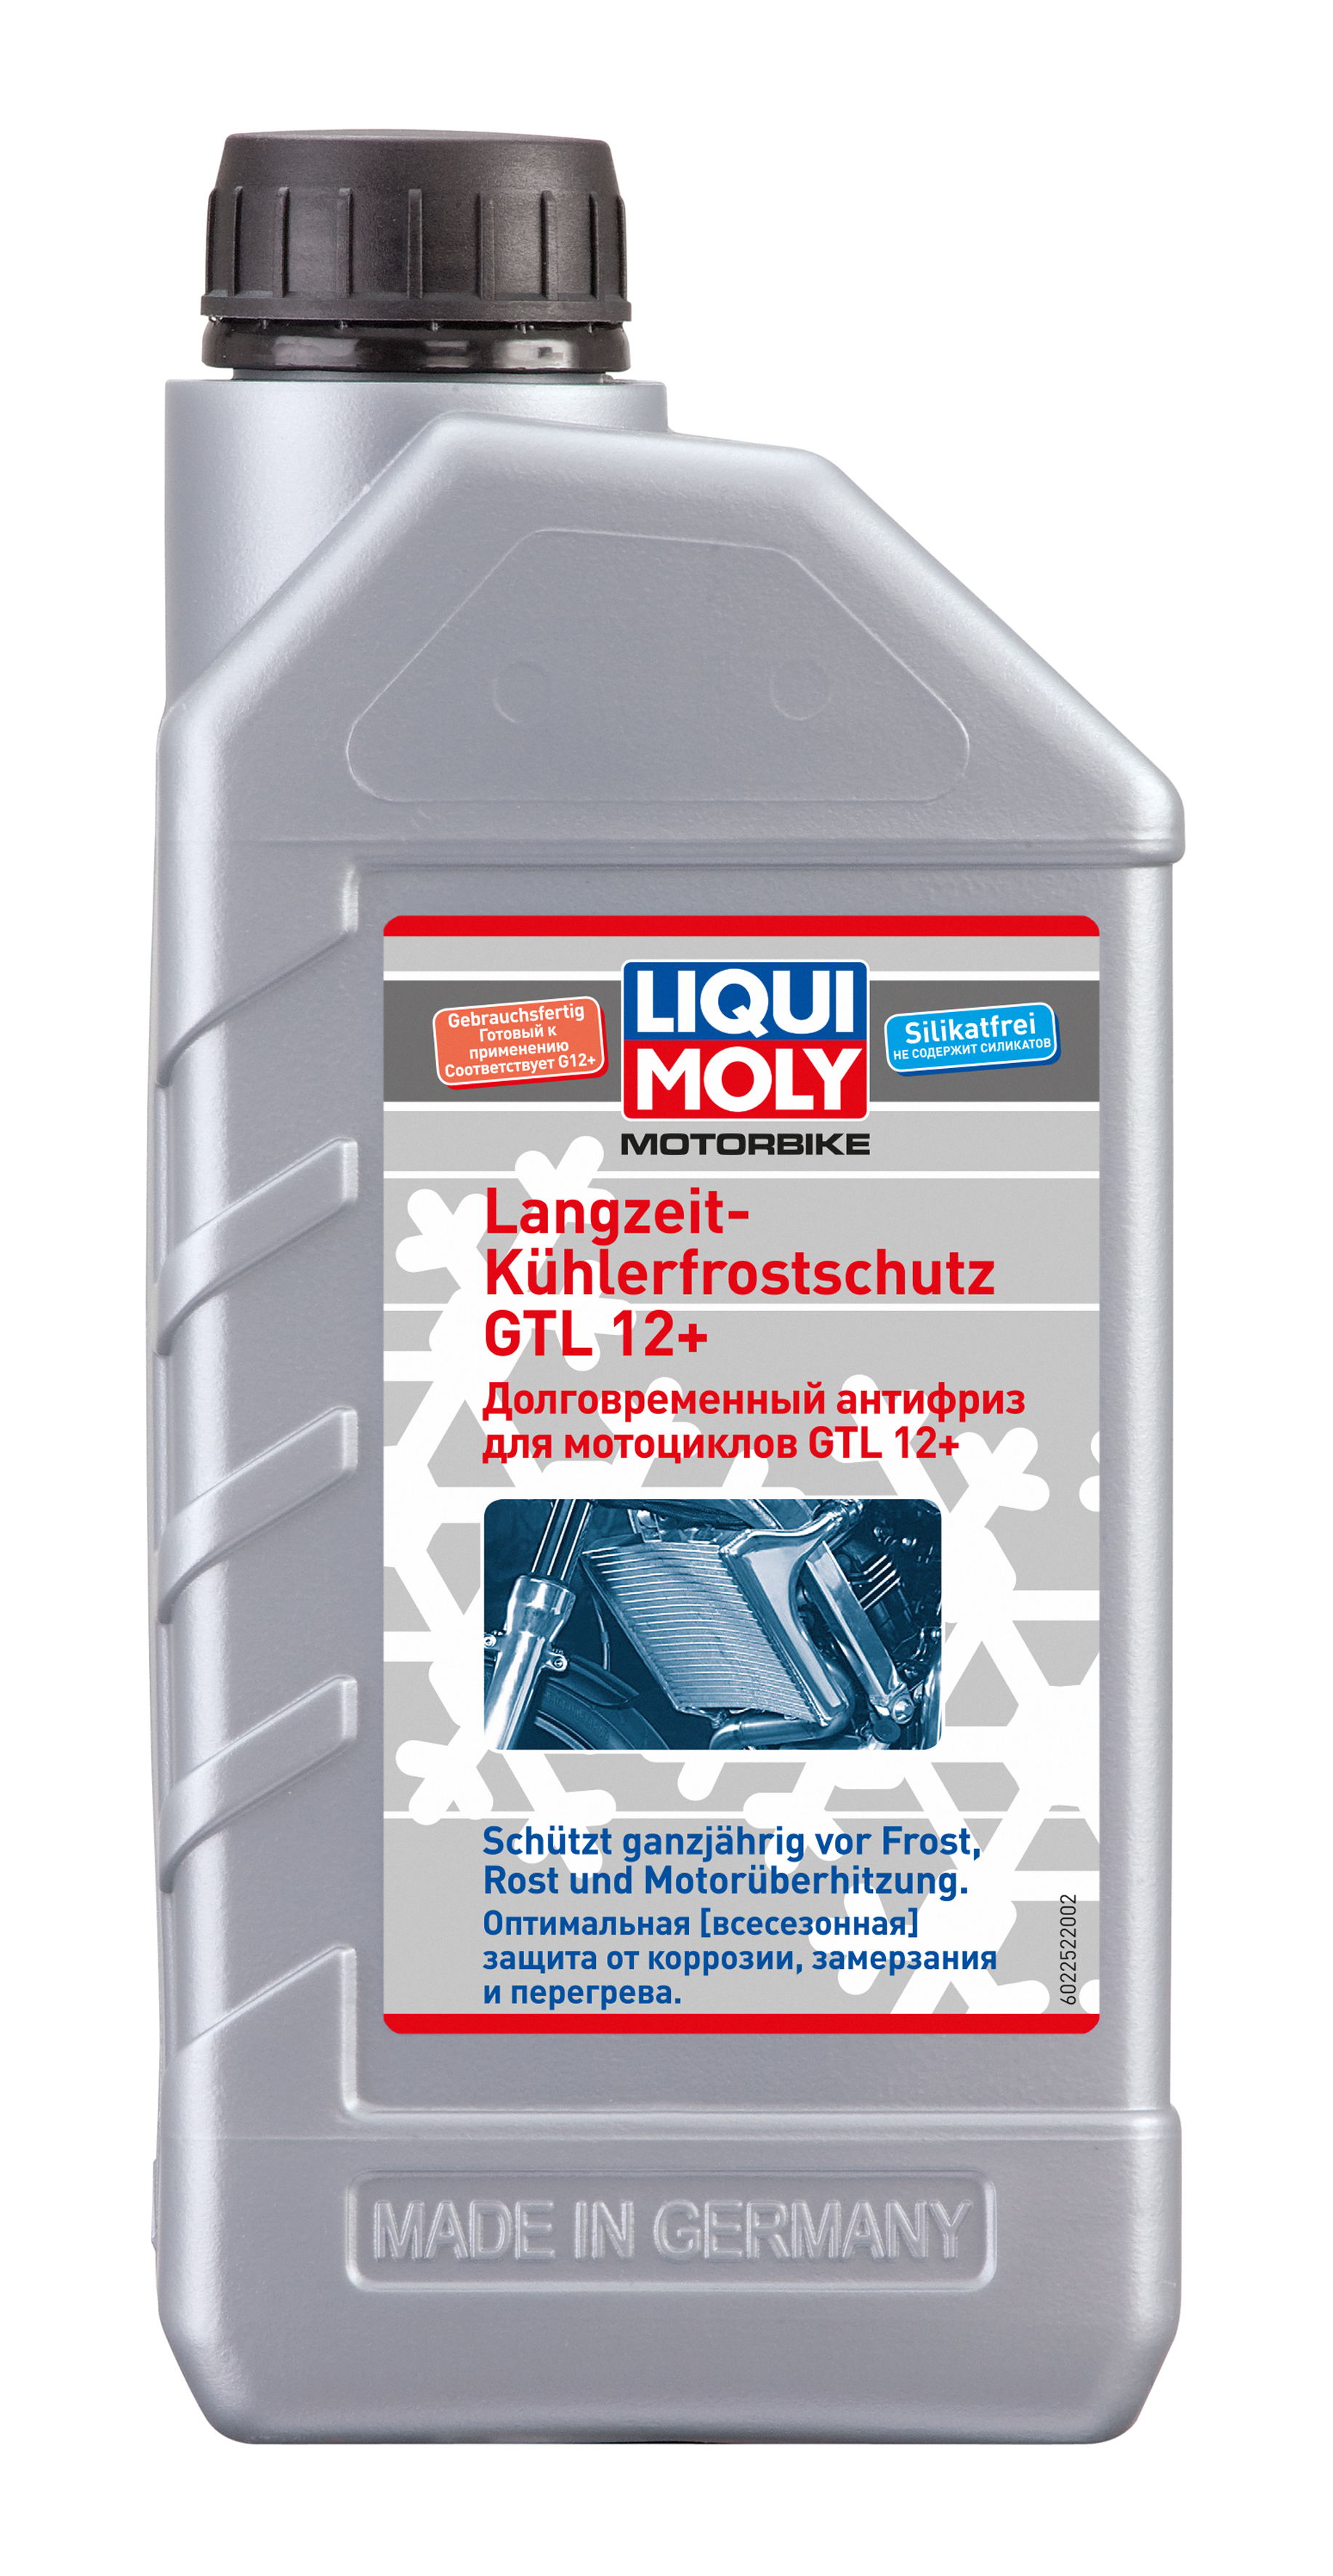 Долговременный антифриз Liqui Moly Motorbike Langzeit Kuhlerfrostschutz GTL 12 Plus